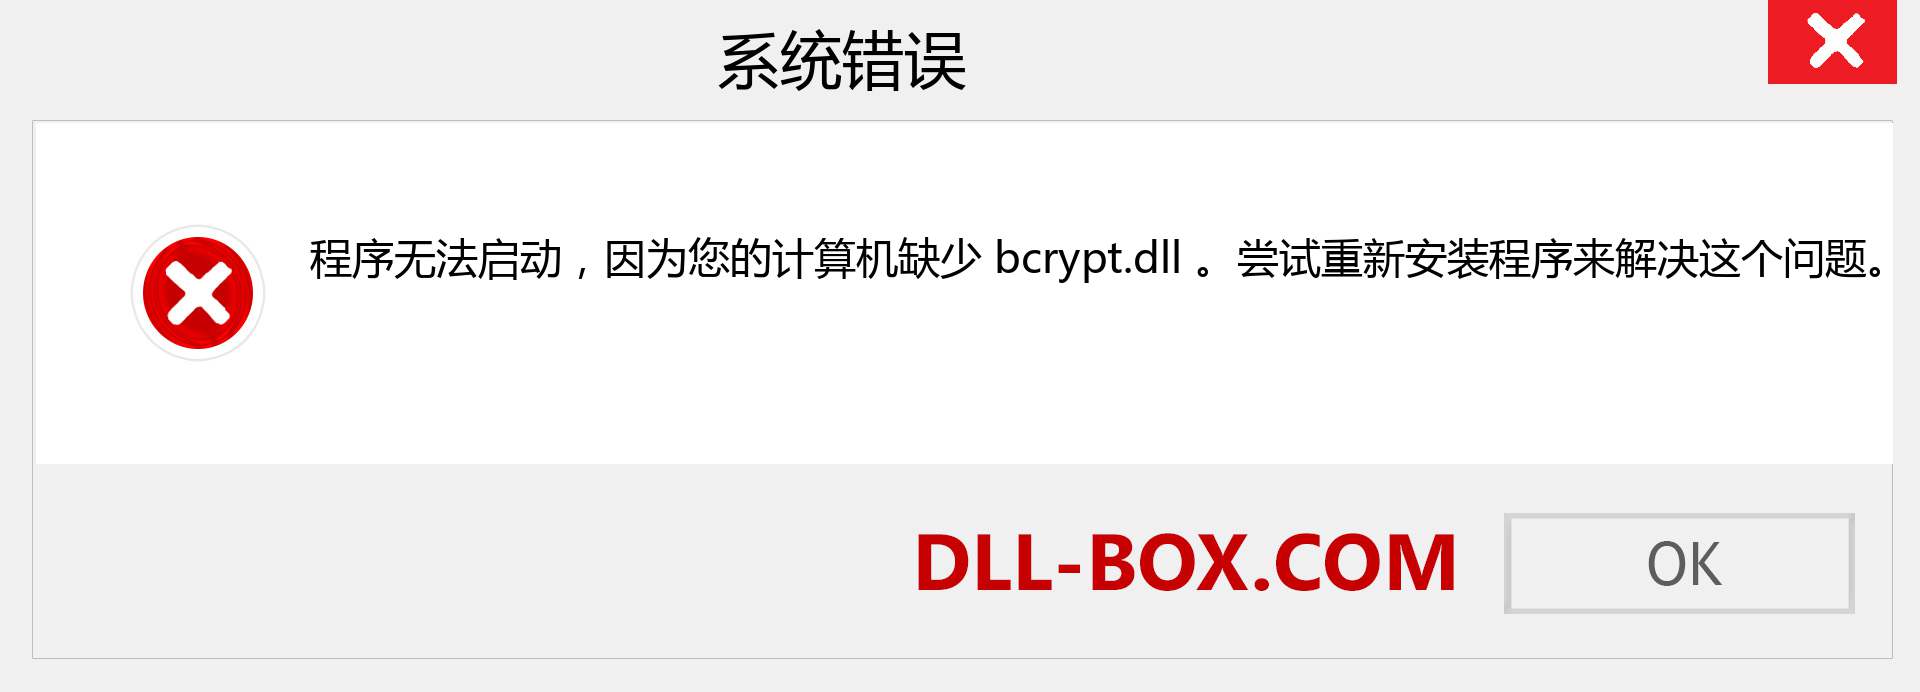 bcrypt.dll 文件丢失？。 适用于 Windows 7、8、10 的下载 - 修复 Windows、照片、图像上的 bcrypt dll 丢失错误